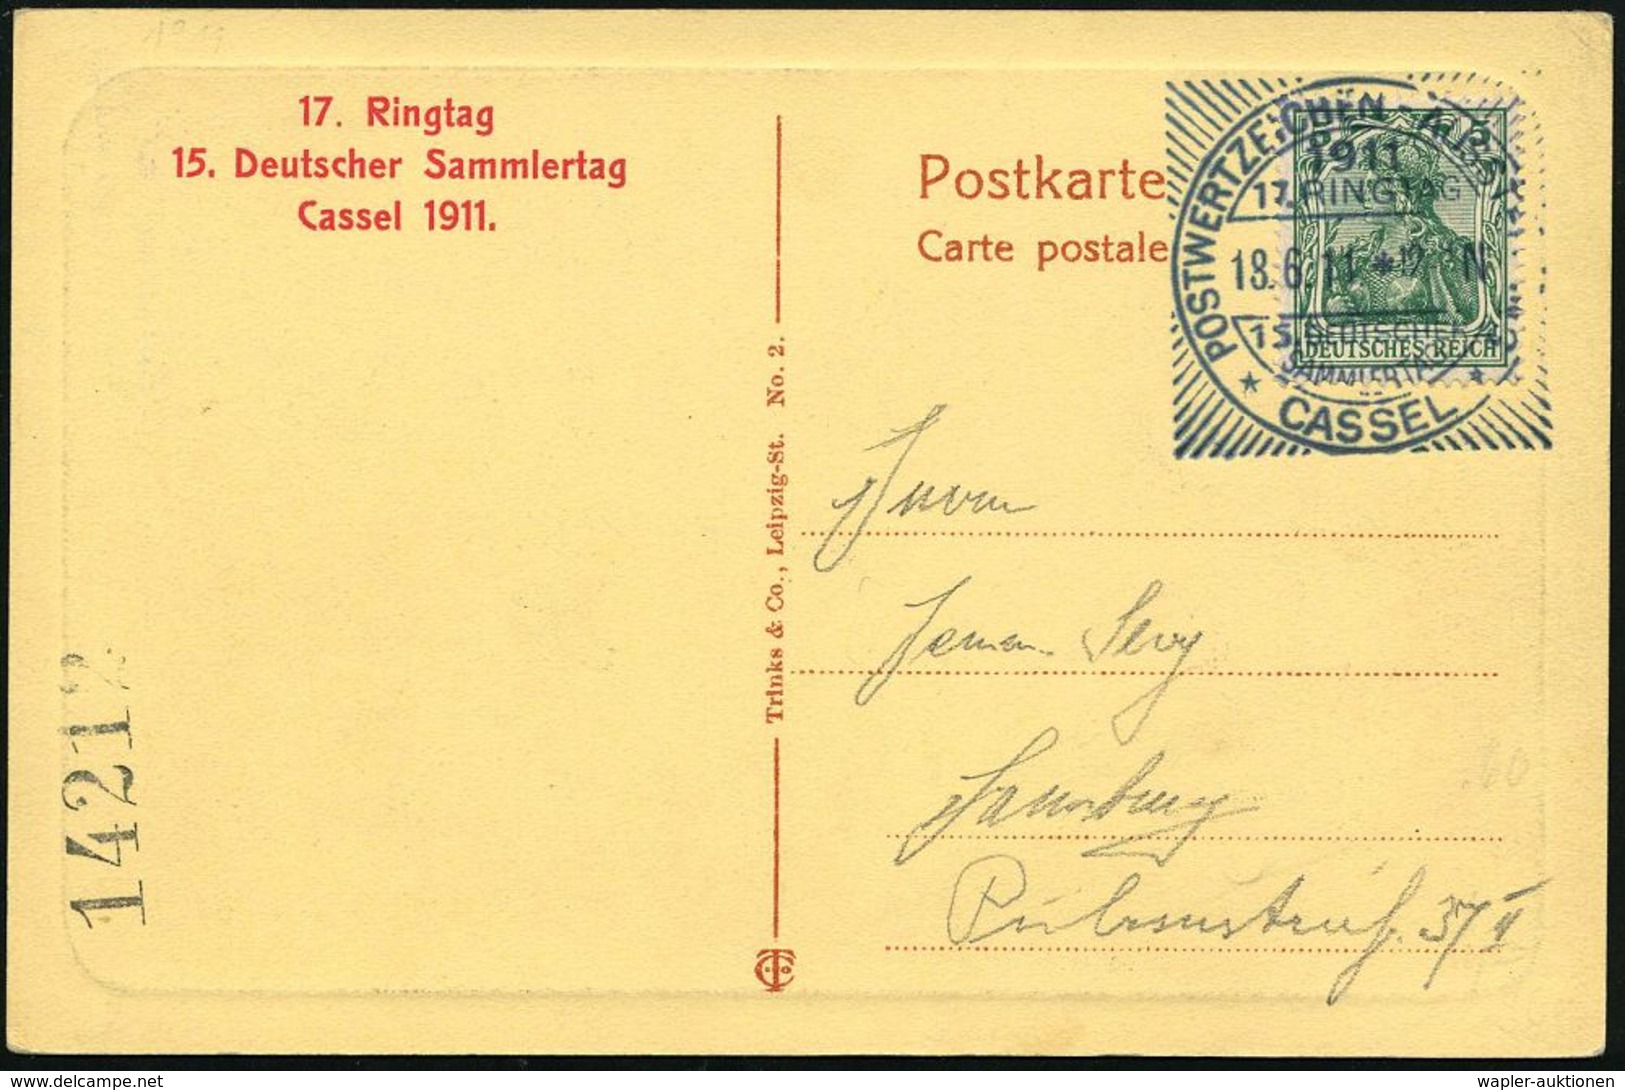 Kassel 1911 (18.6.) SSt: CASSEL/POSTWERTZEICHEN-AUSSTELLUNG/17.RINGTAG/15.DEUTSCHER/SAMMLERTAG (Sonderform Mit Strahlenk - Briefmarkenausstellungen